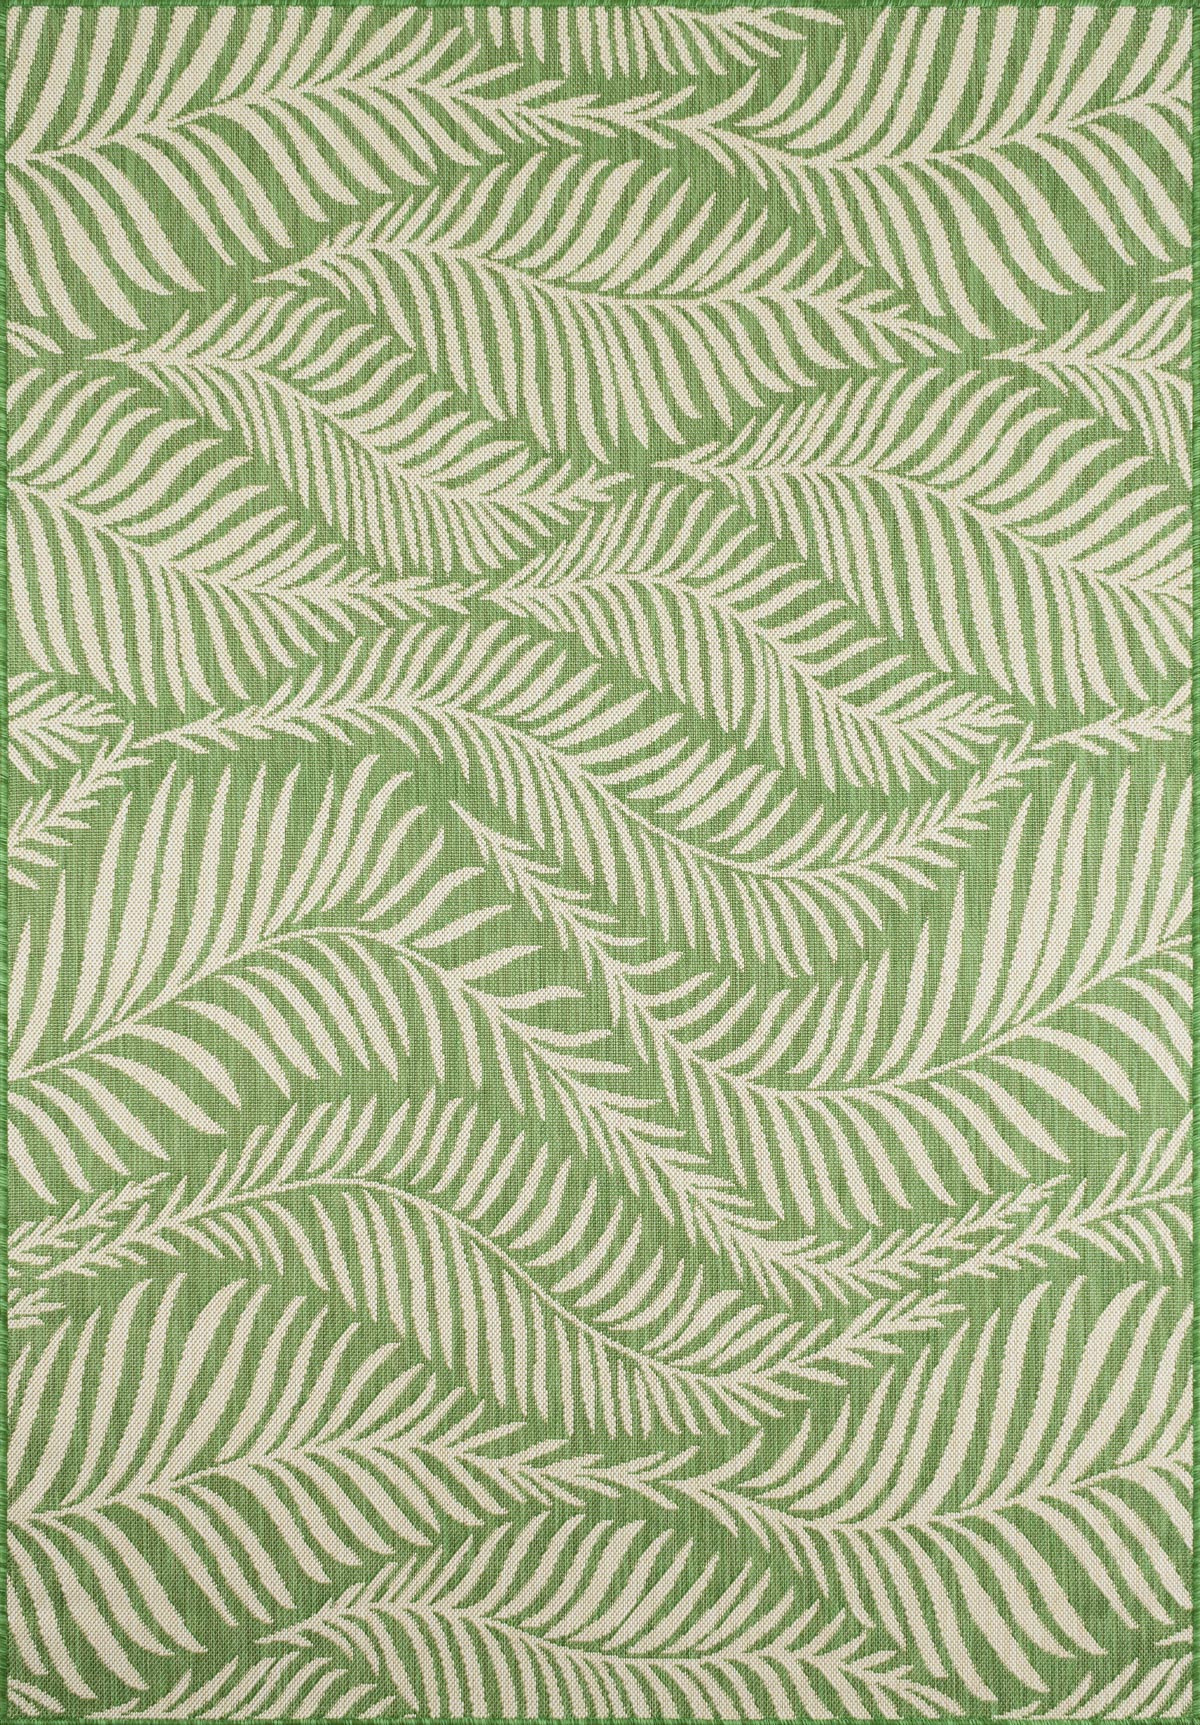 Tapis feuille de palmier indoor outdoor vert - 200x290